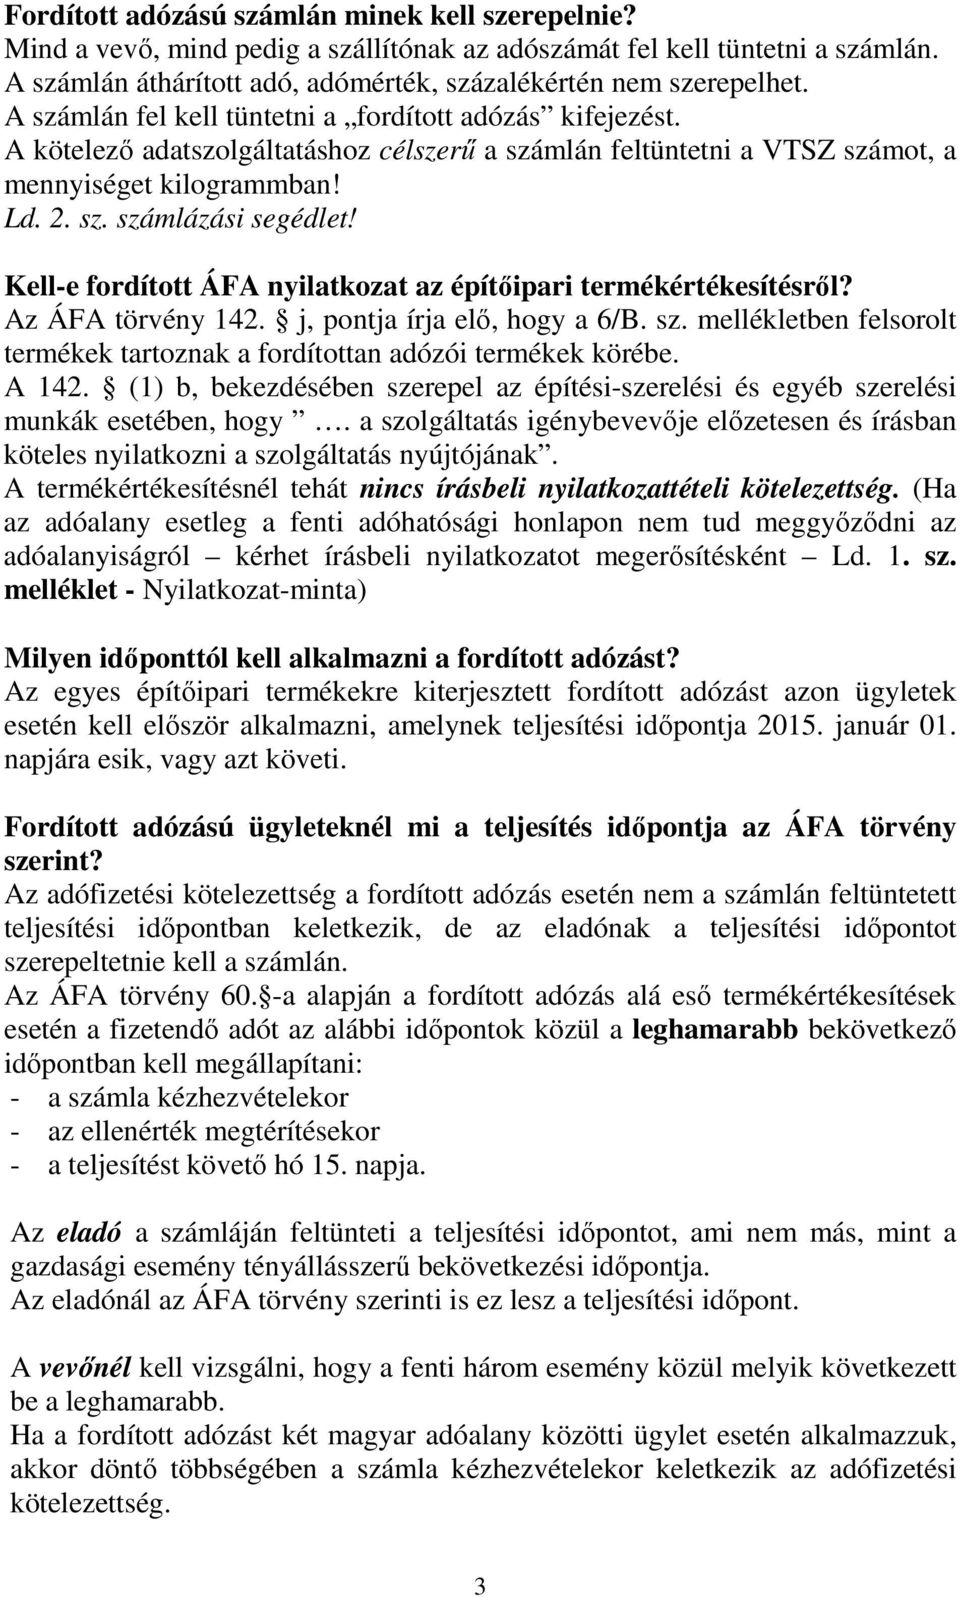 Kell-e fordított ÁFA nyilatkozat az építıipari termékértékesítésrıl? Az ÁFA törvény 142. j, pontja írja elı, hogy a 6/B. sz.